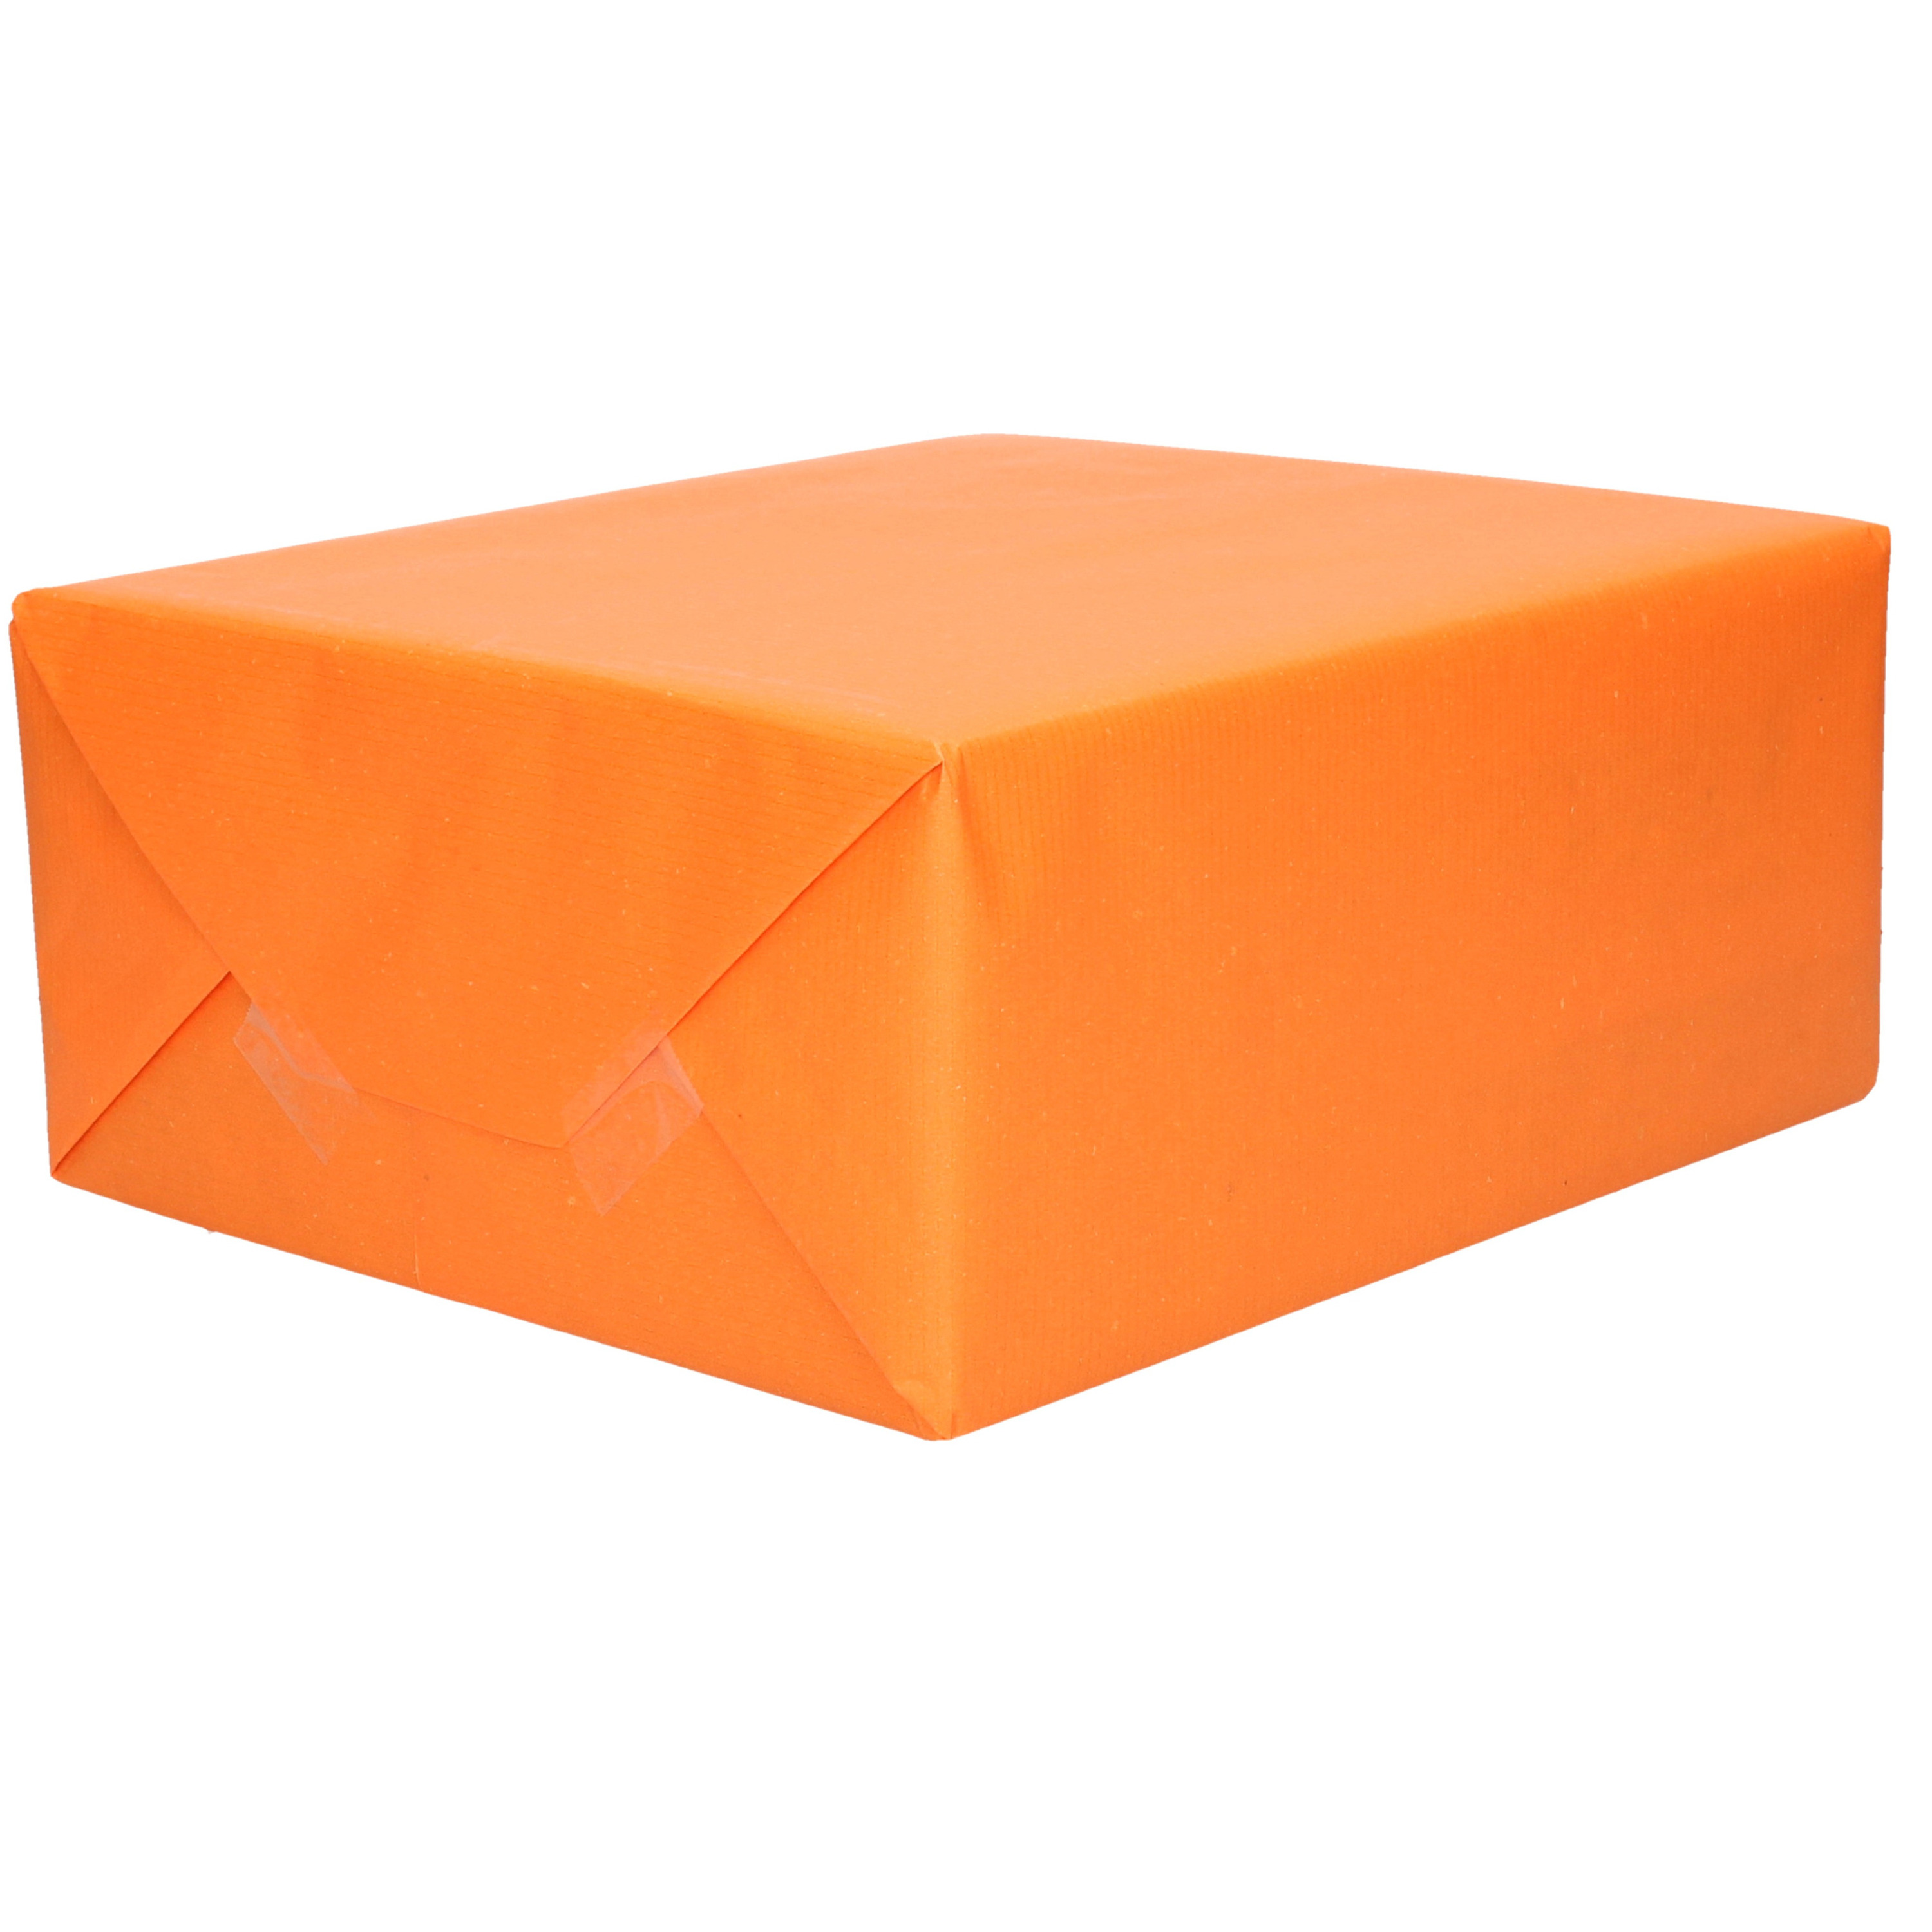 1x Rol kraft inpakpapier oranje 200 x 70 cm